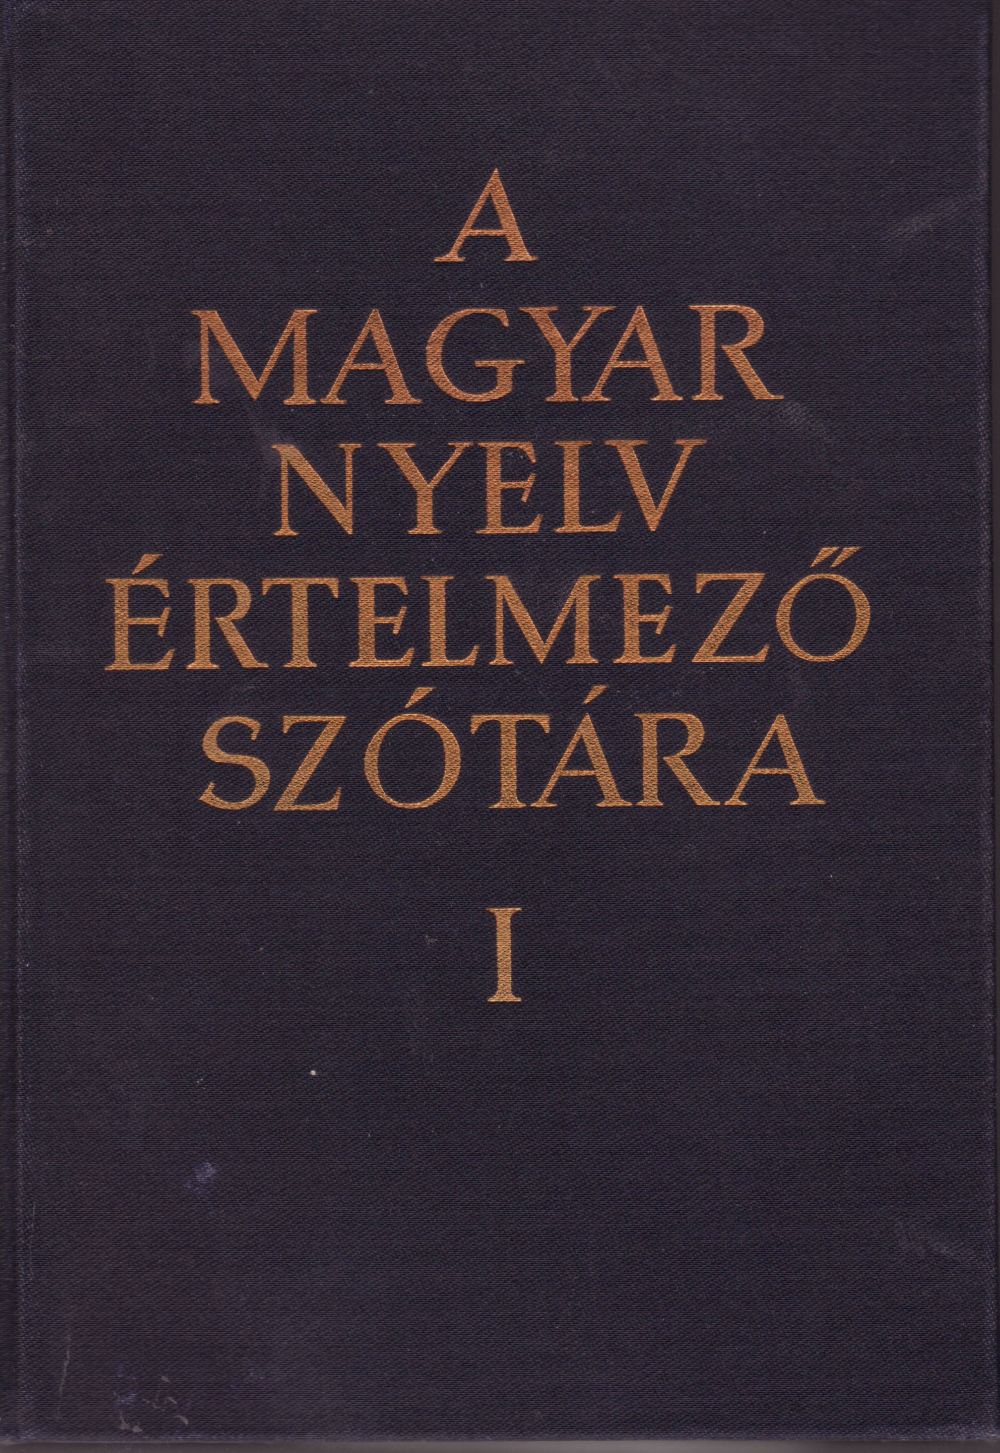 a-magyar-nyelv-ertelemzo-szotara-cimlap-2.jpg